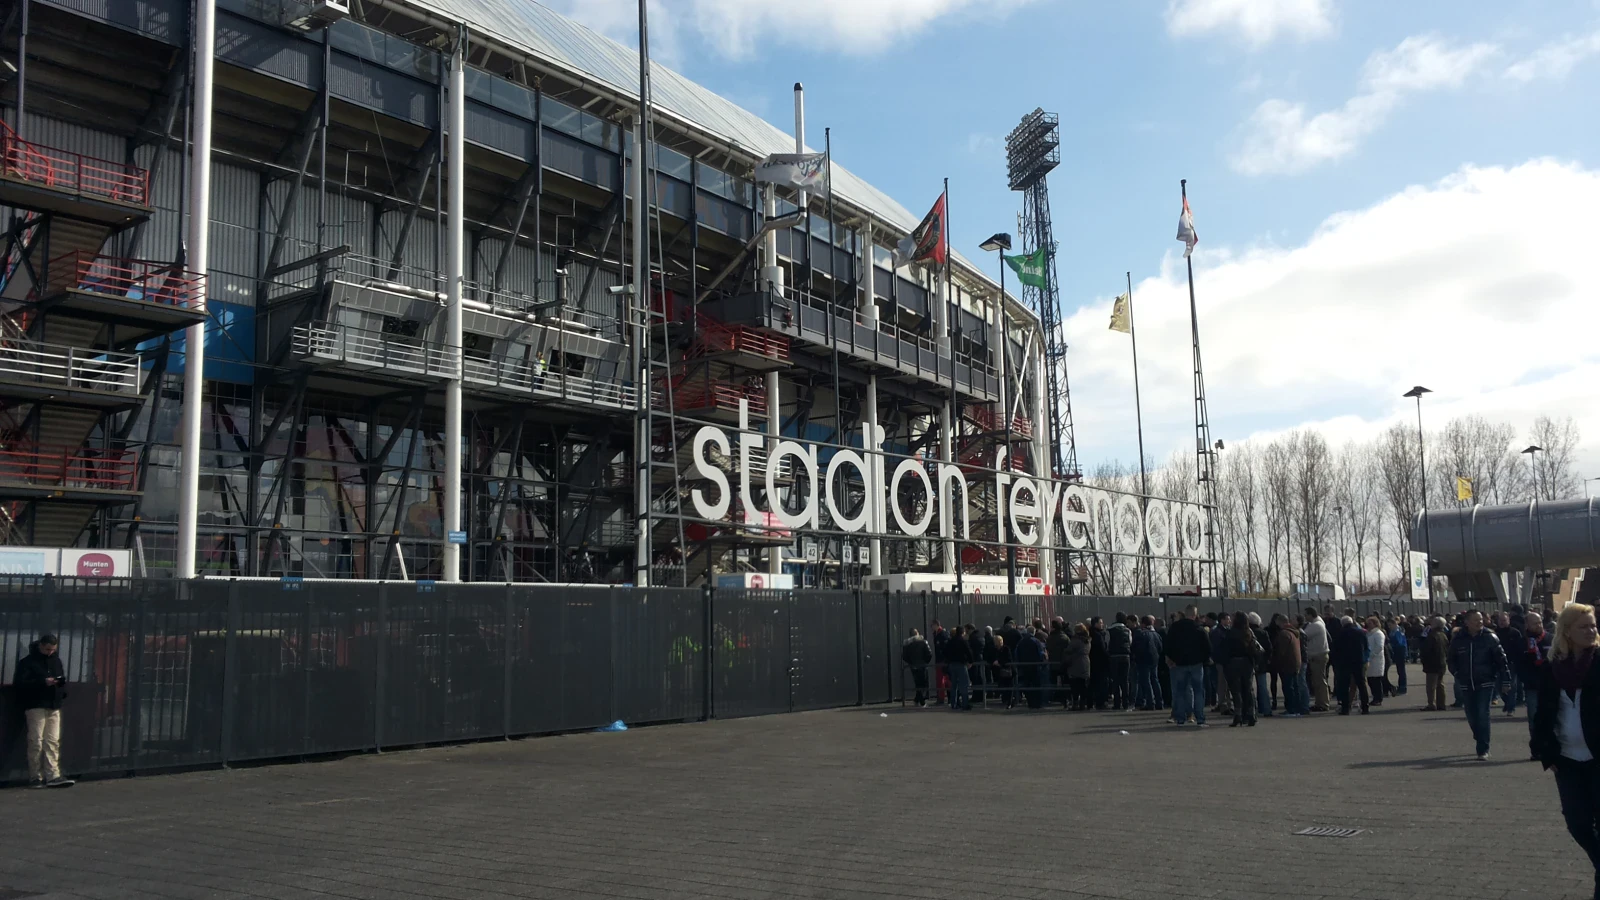 Hoogtepunten ADO - Feyenoord deze eeuw: Van jonge Van Persie tot oude Makaay